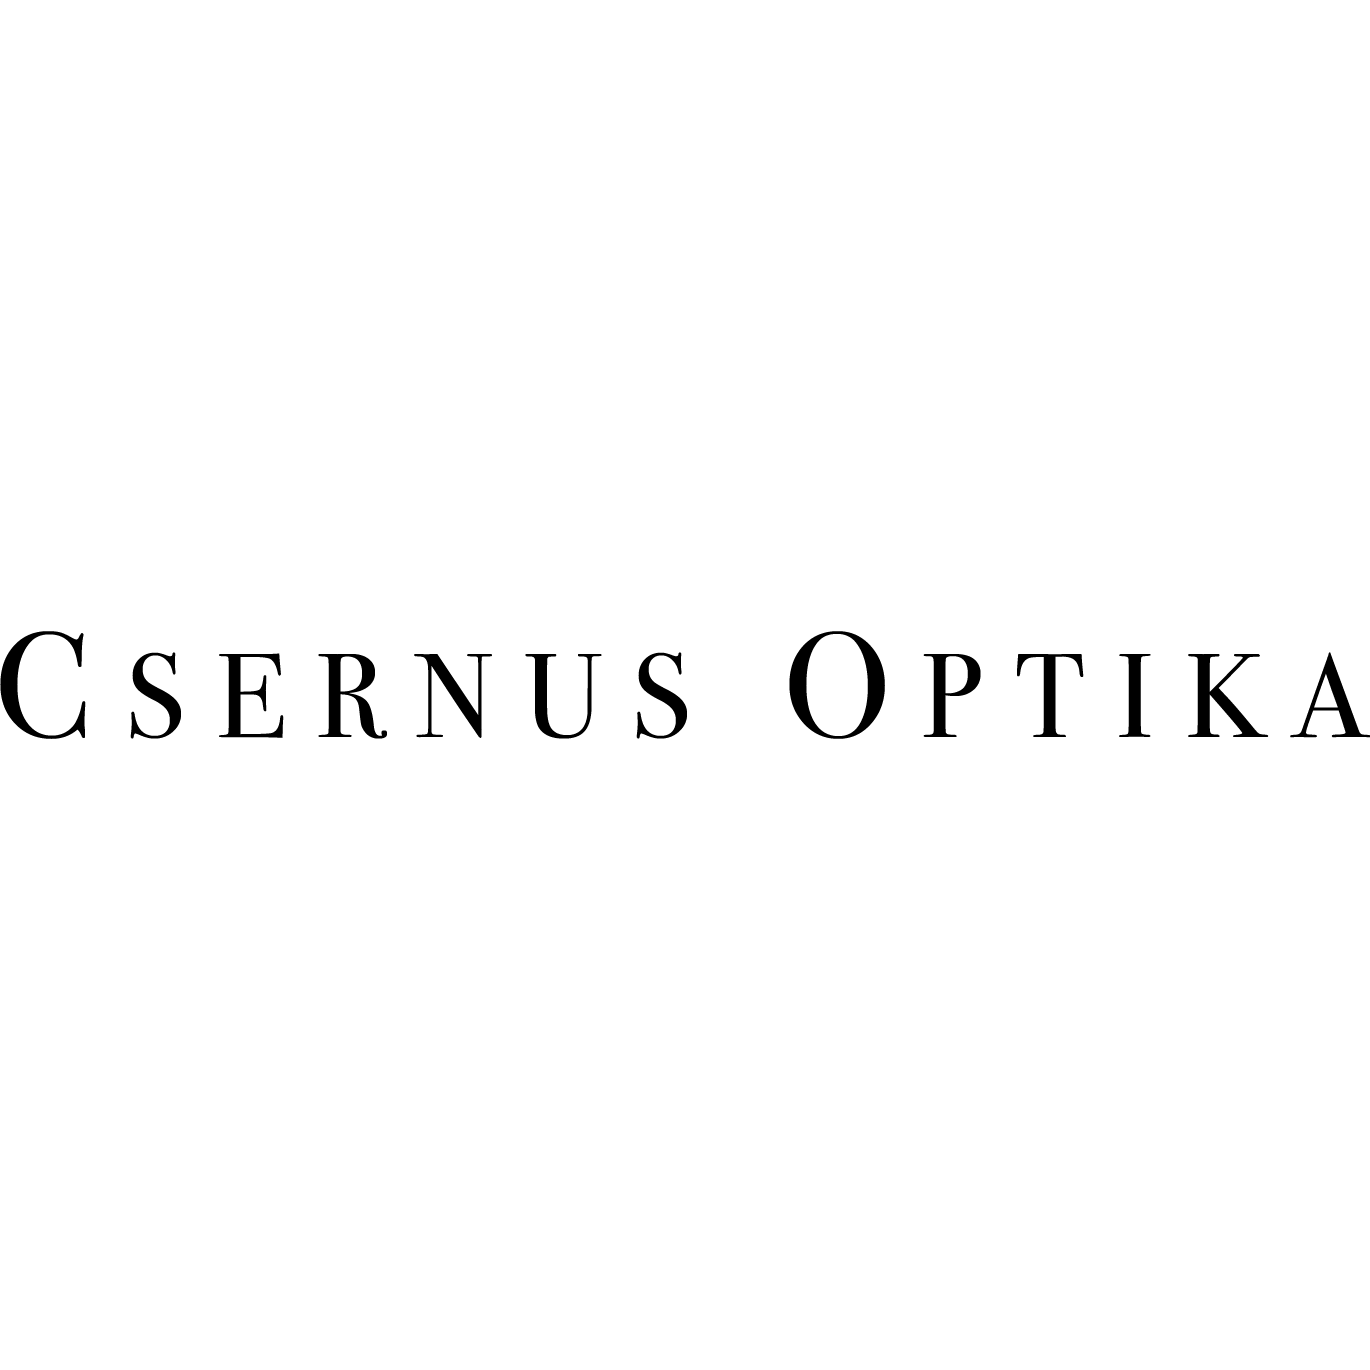 Csernus Optika